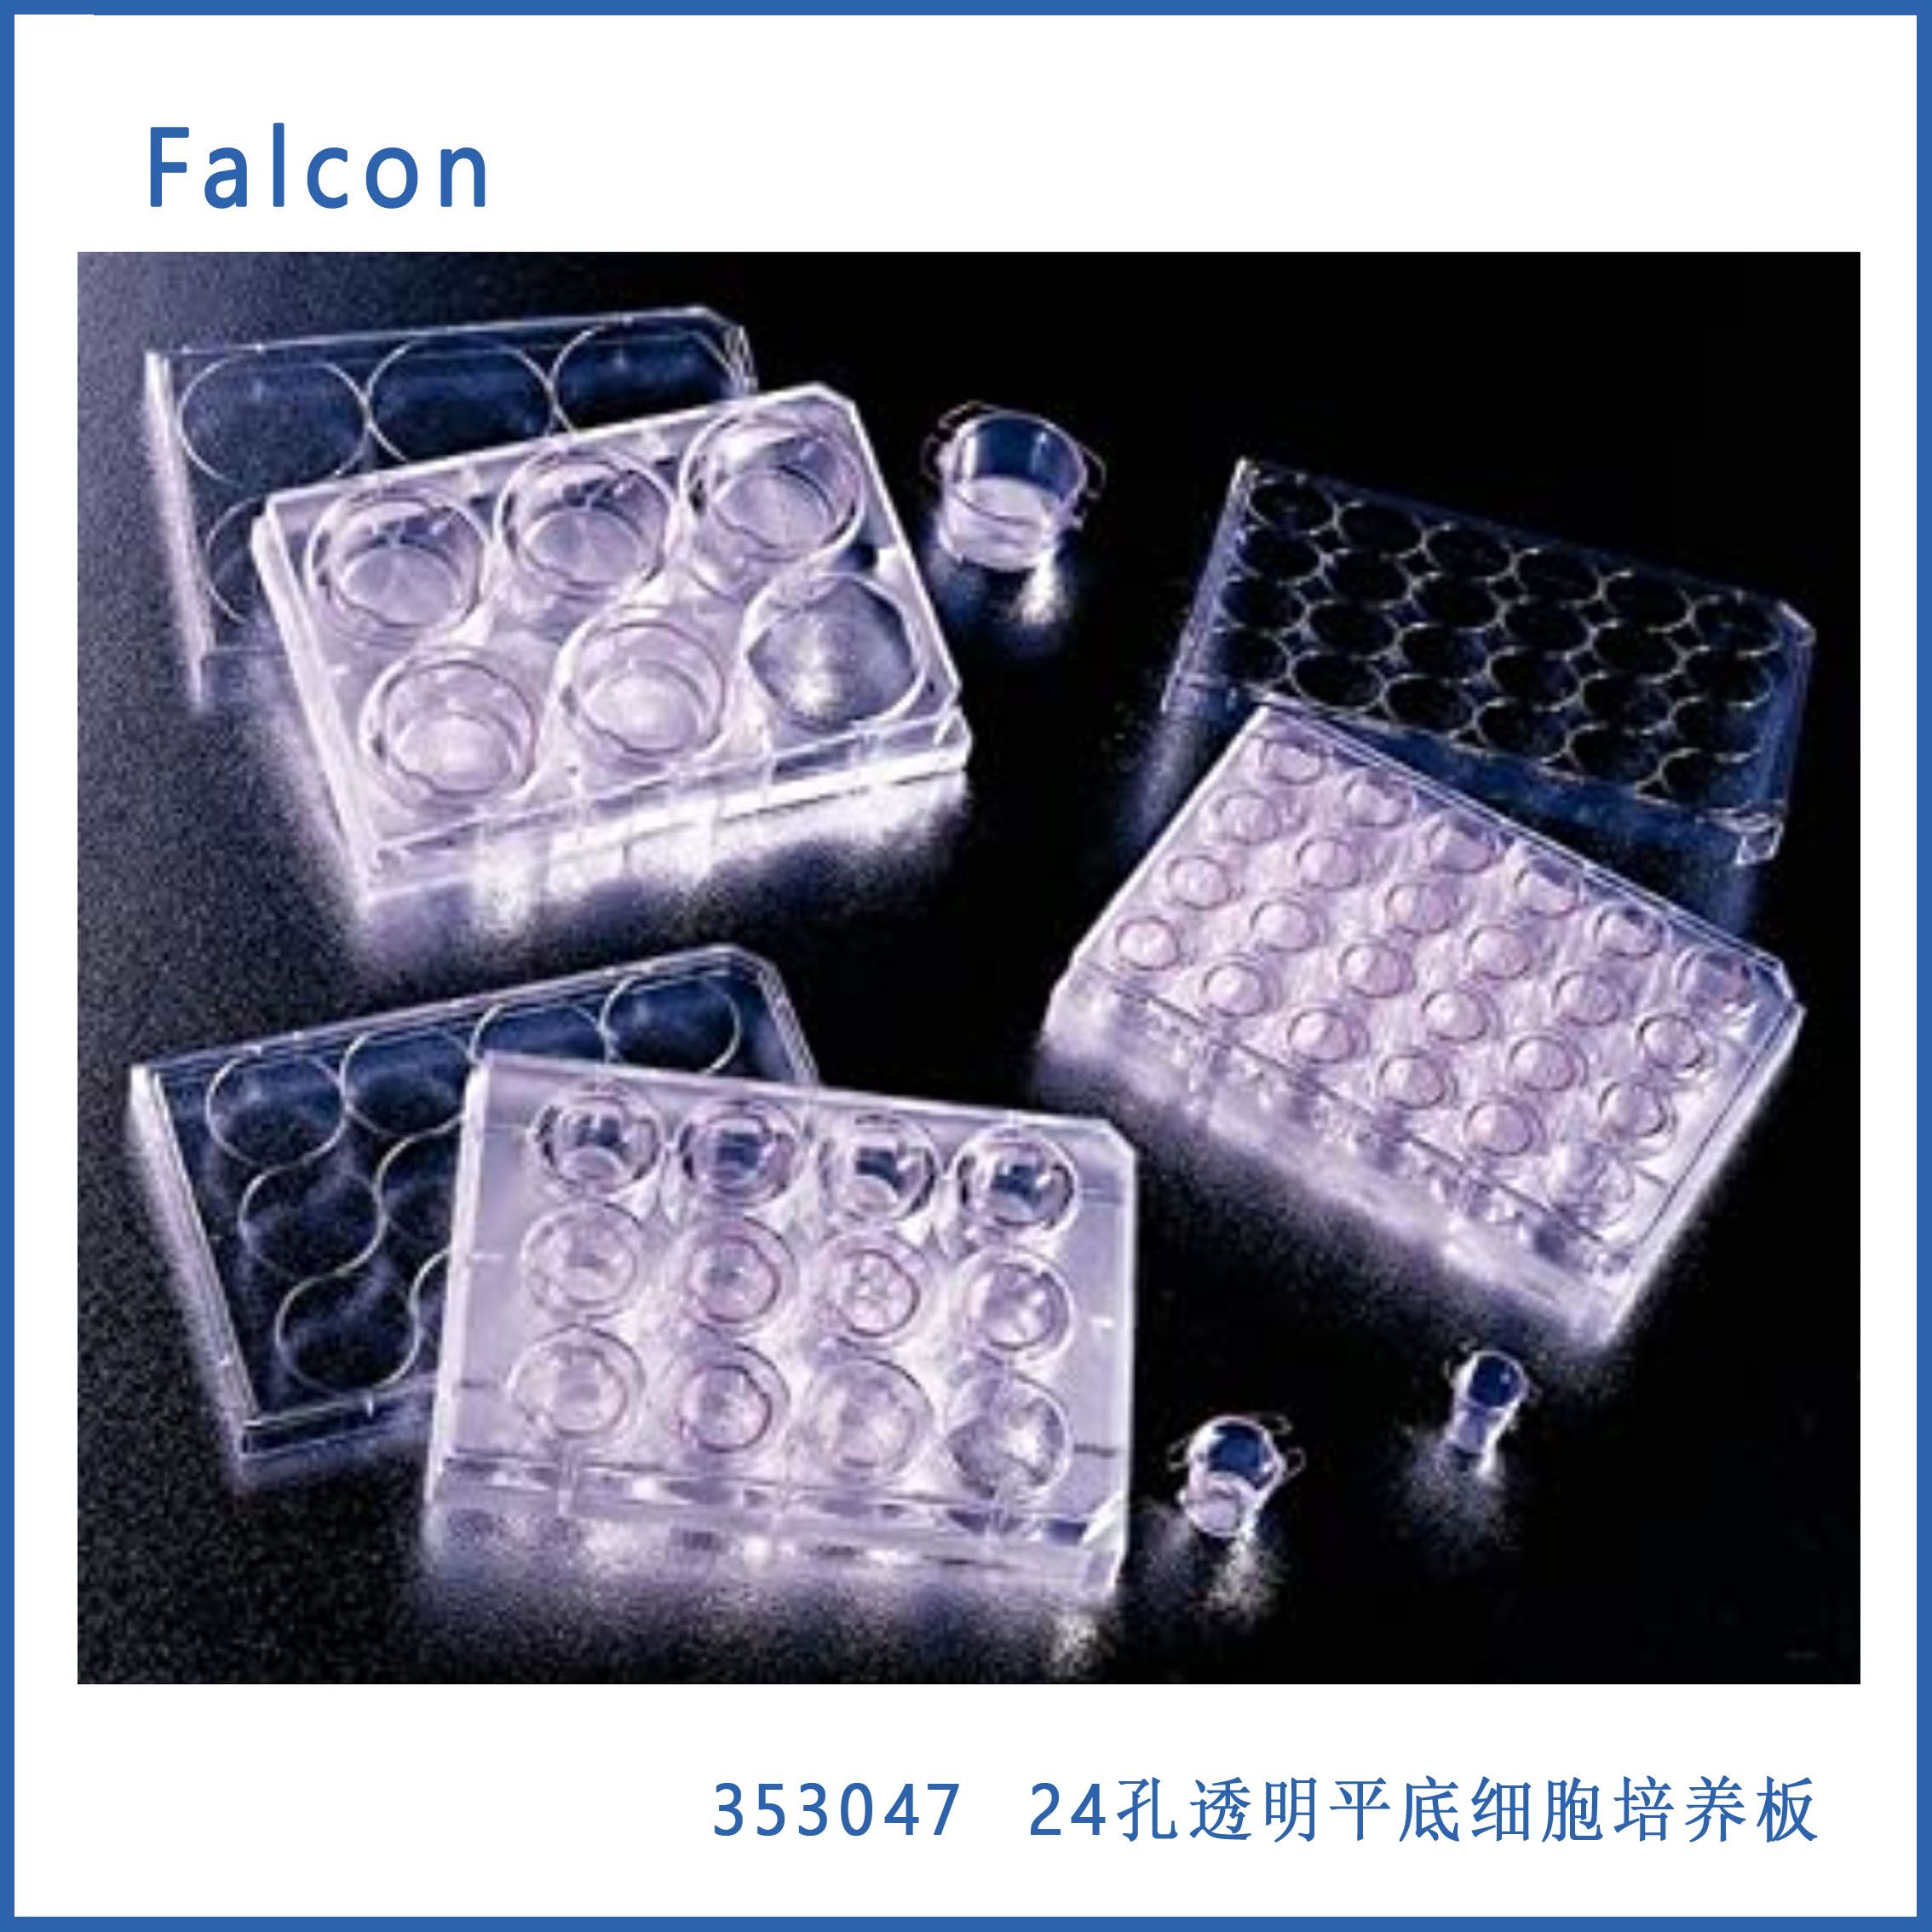 24孔细胞培养板 平底带盖 Faclon 353047 现货